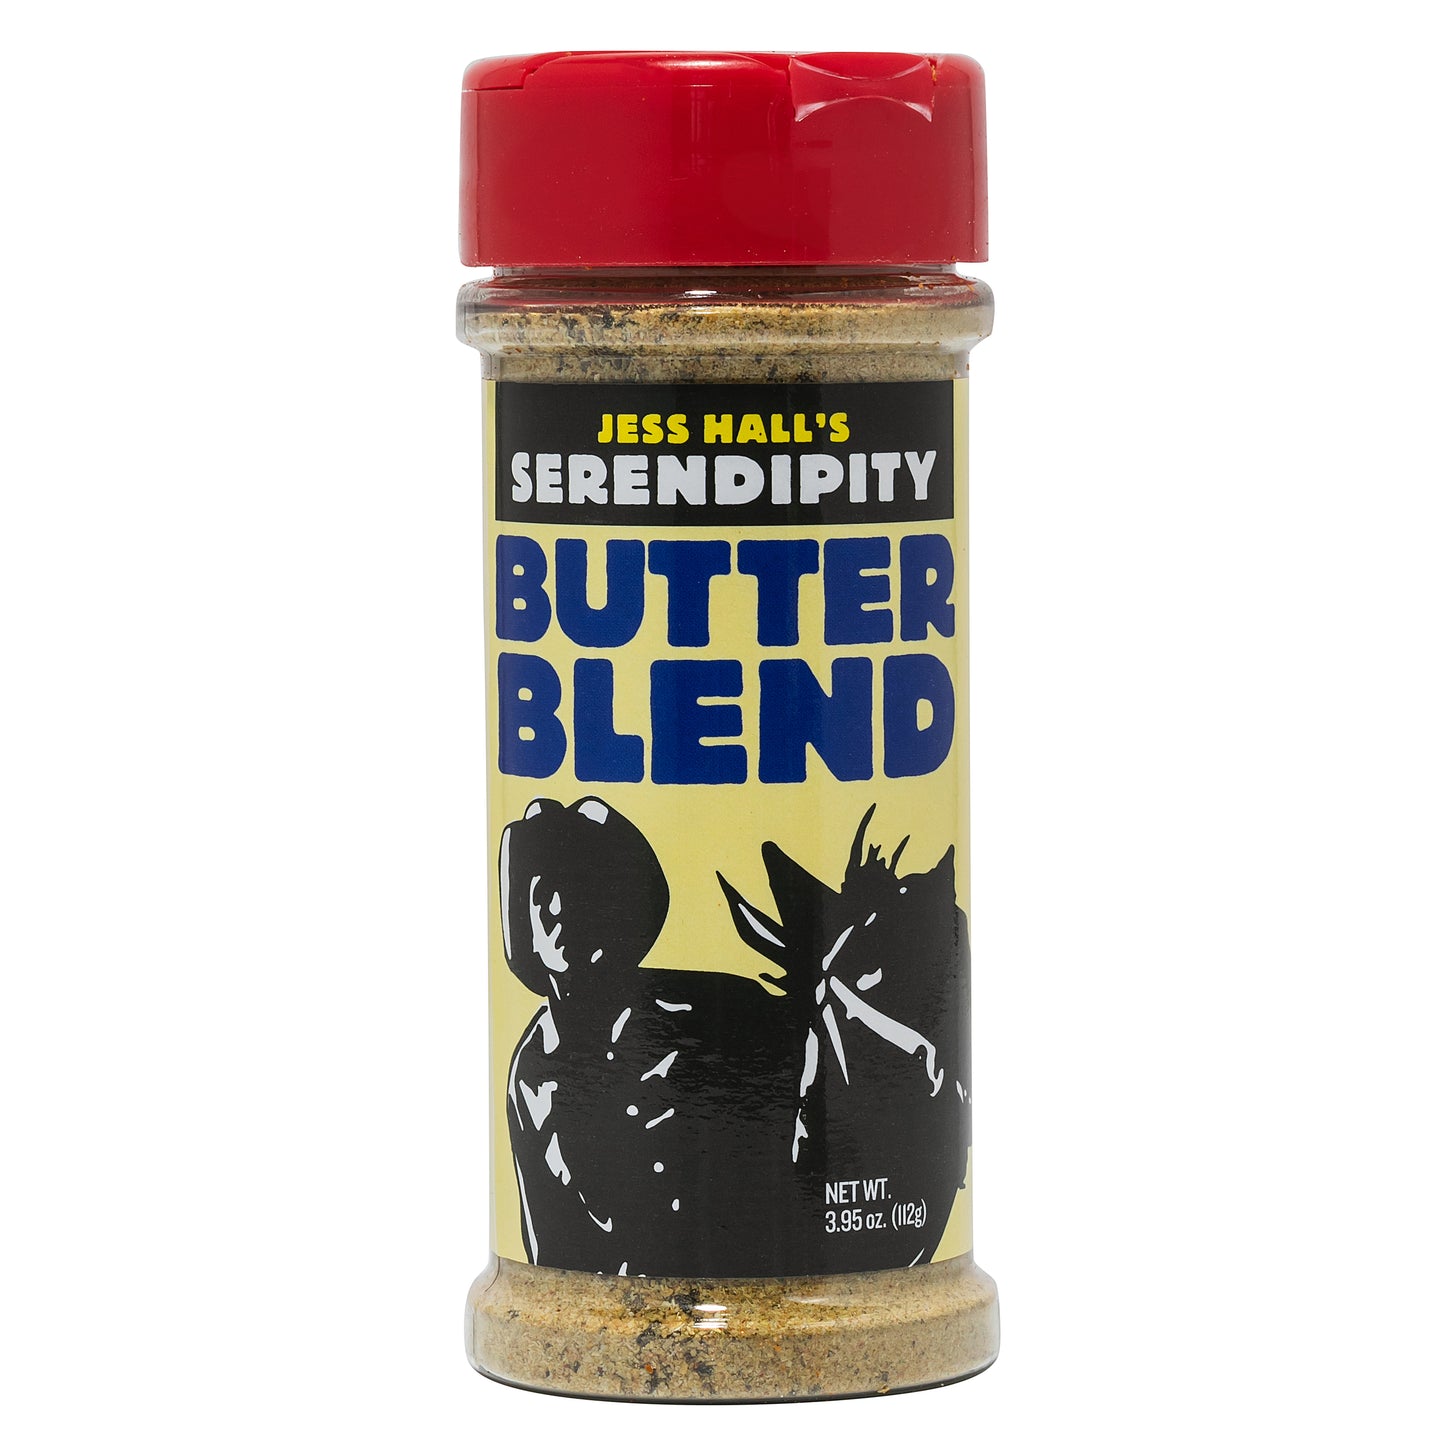 Jess Hall's Serendipity Butter Blend 3.95 Oz